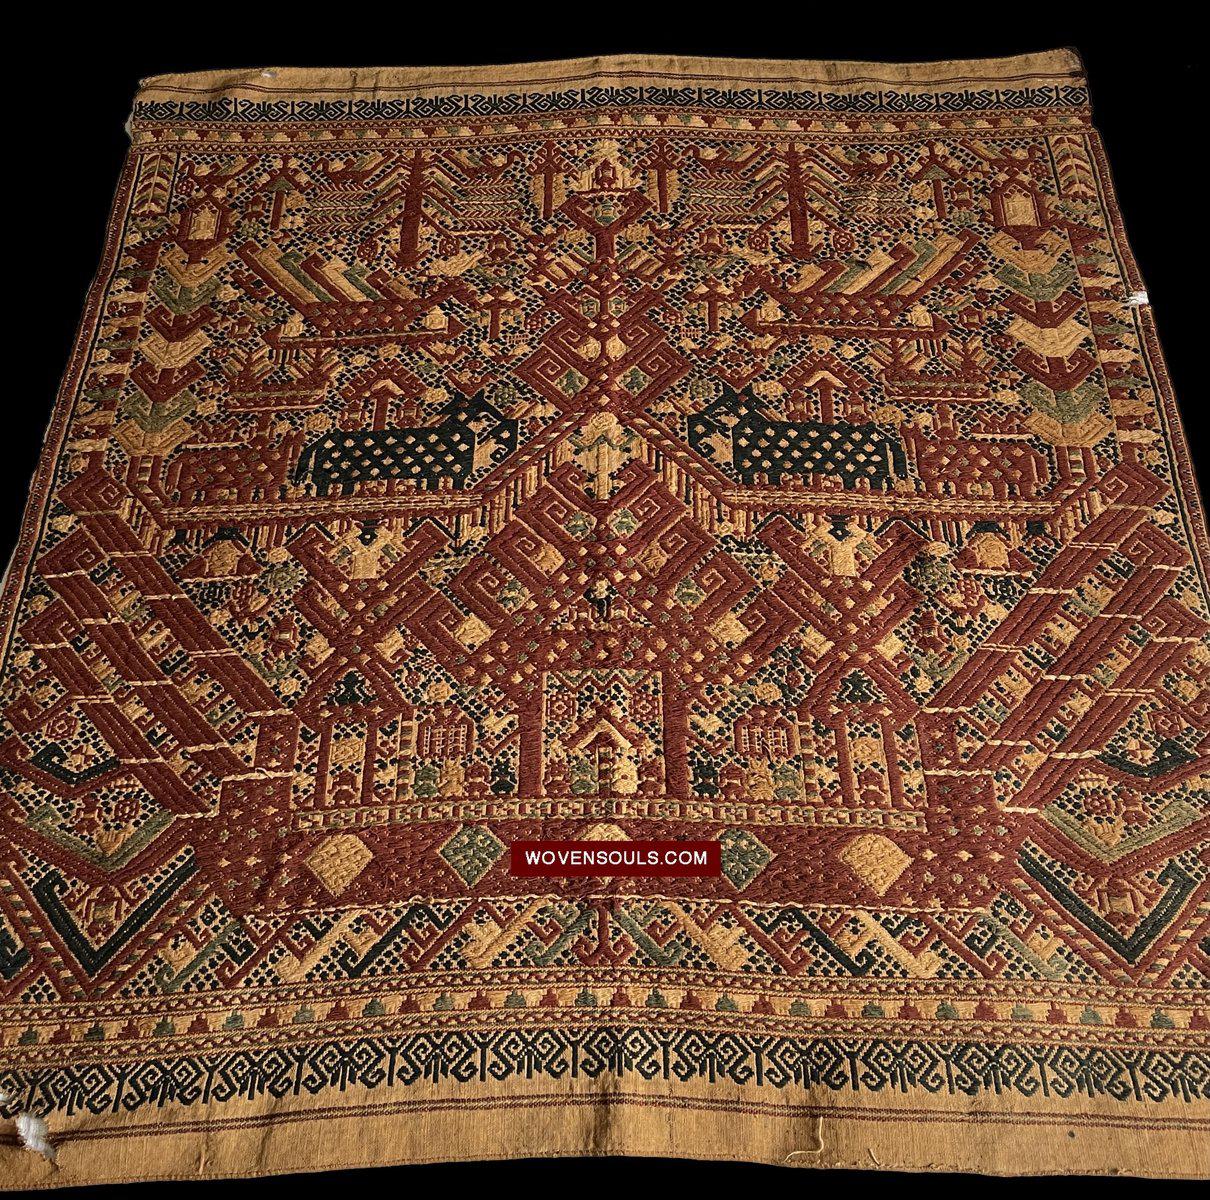 1590 Antique Kalianda Tampan Ship Cloth Sumatra textile-WOVENSOULS-Antique-Vintage-Textiles-Art-Decor